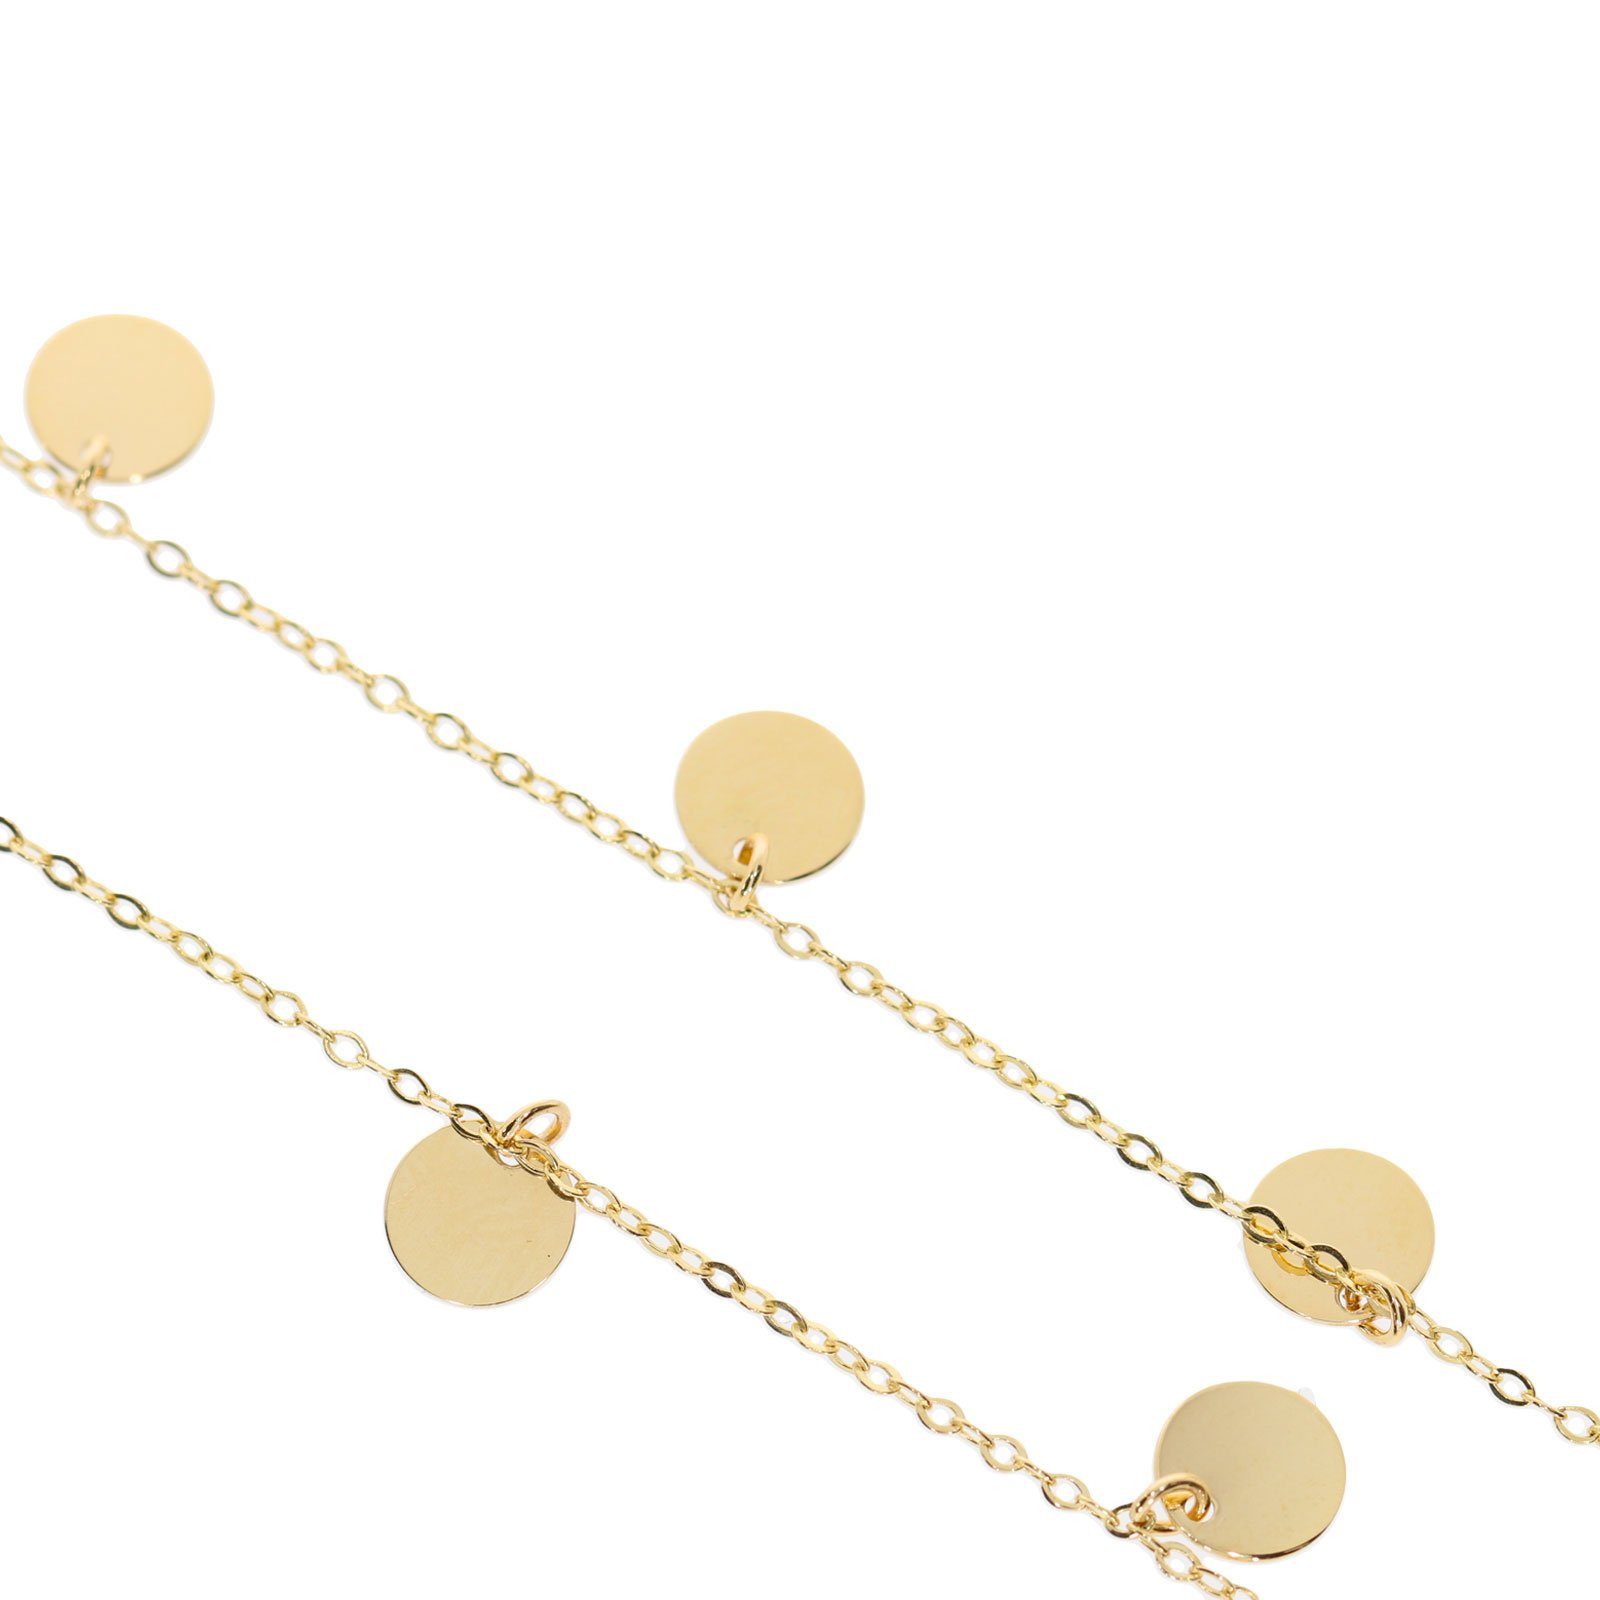 Stella-Jewellery Collier 585 Gold Damen Halskette mit 7 Plättchen 45 cm (inkl. Etui), 585 Gelbgold 7 Plättchen